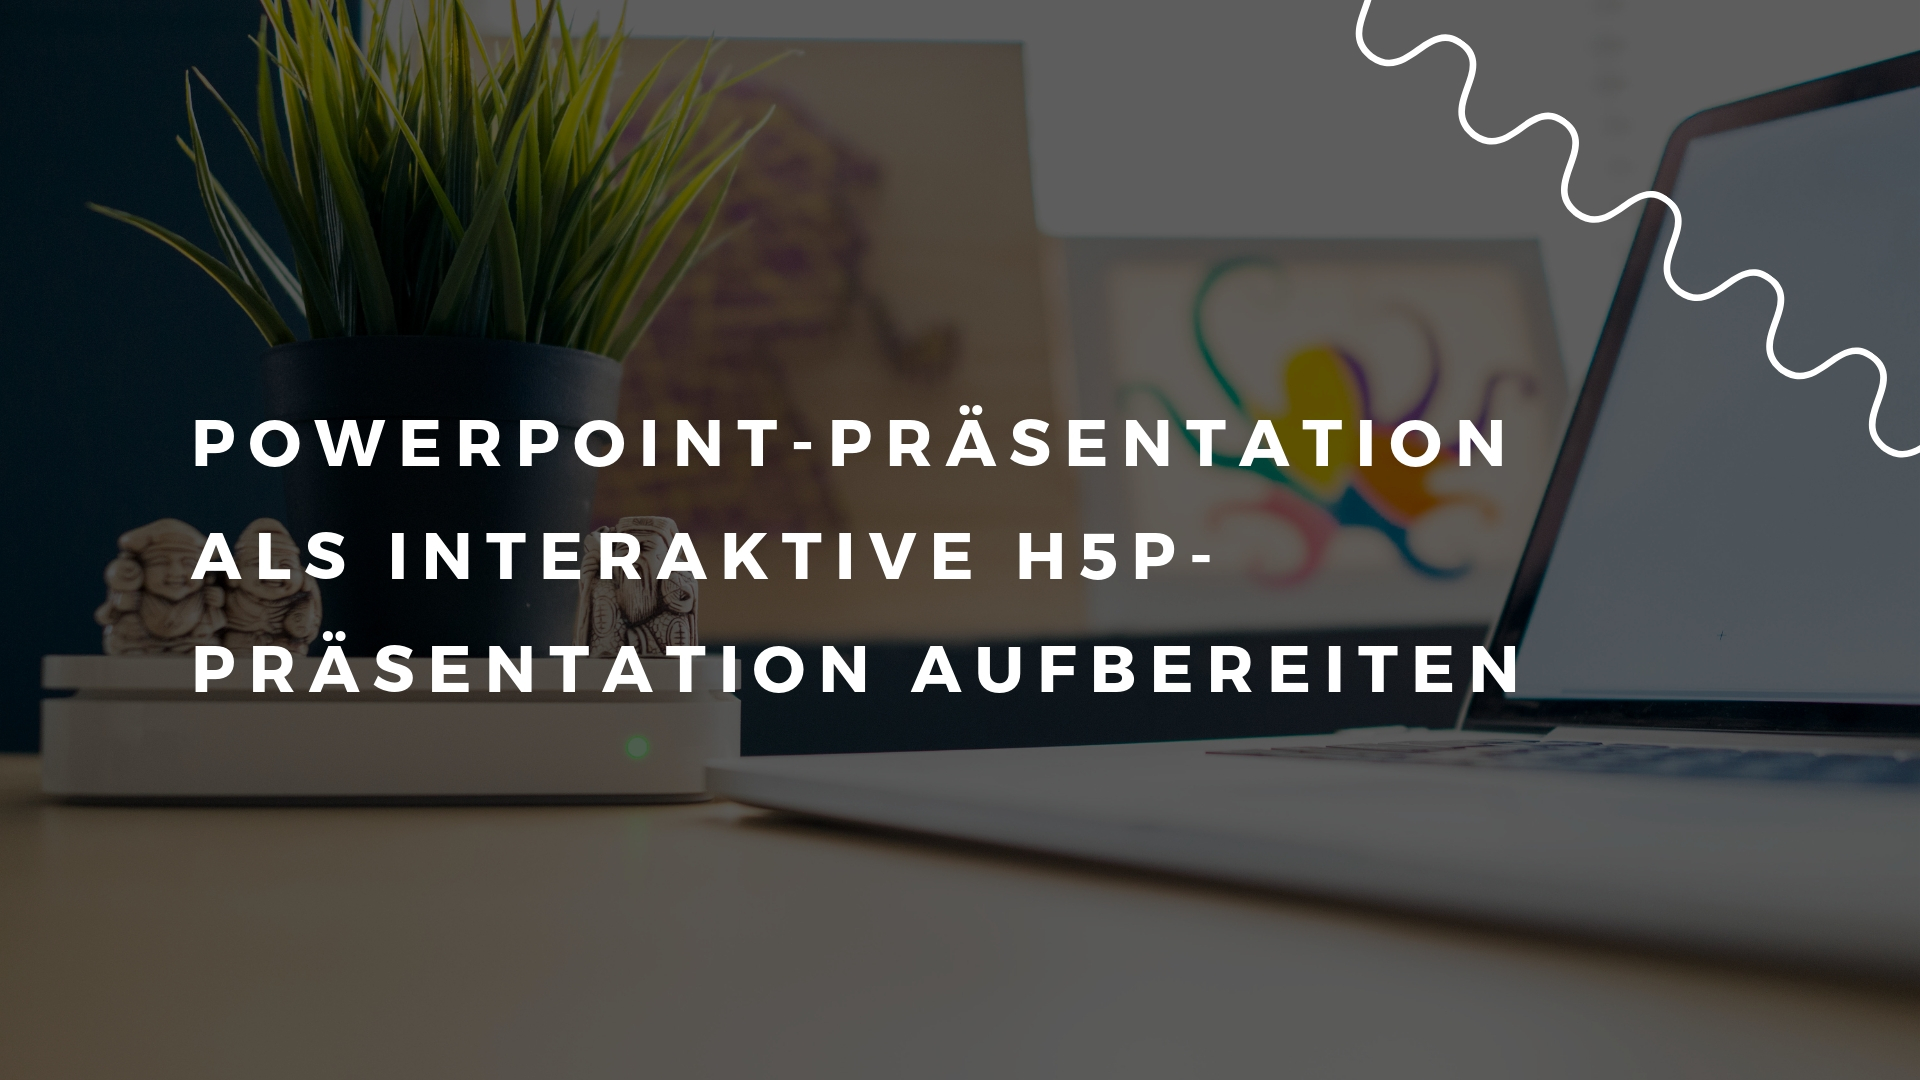 PowerPoint-Präsentation als interaktive H5P-Präsentation aufbereiten